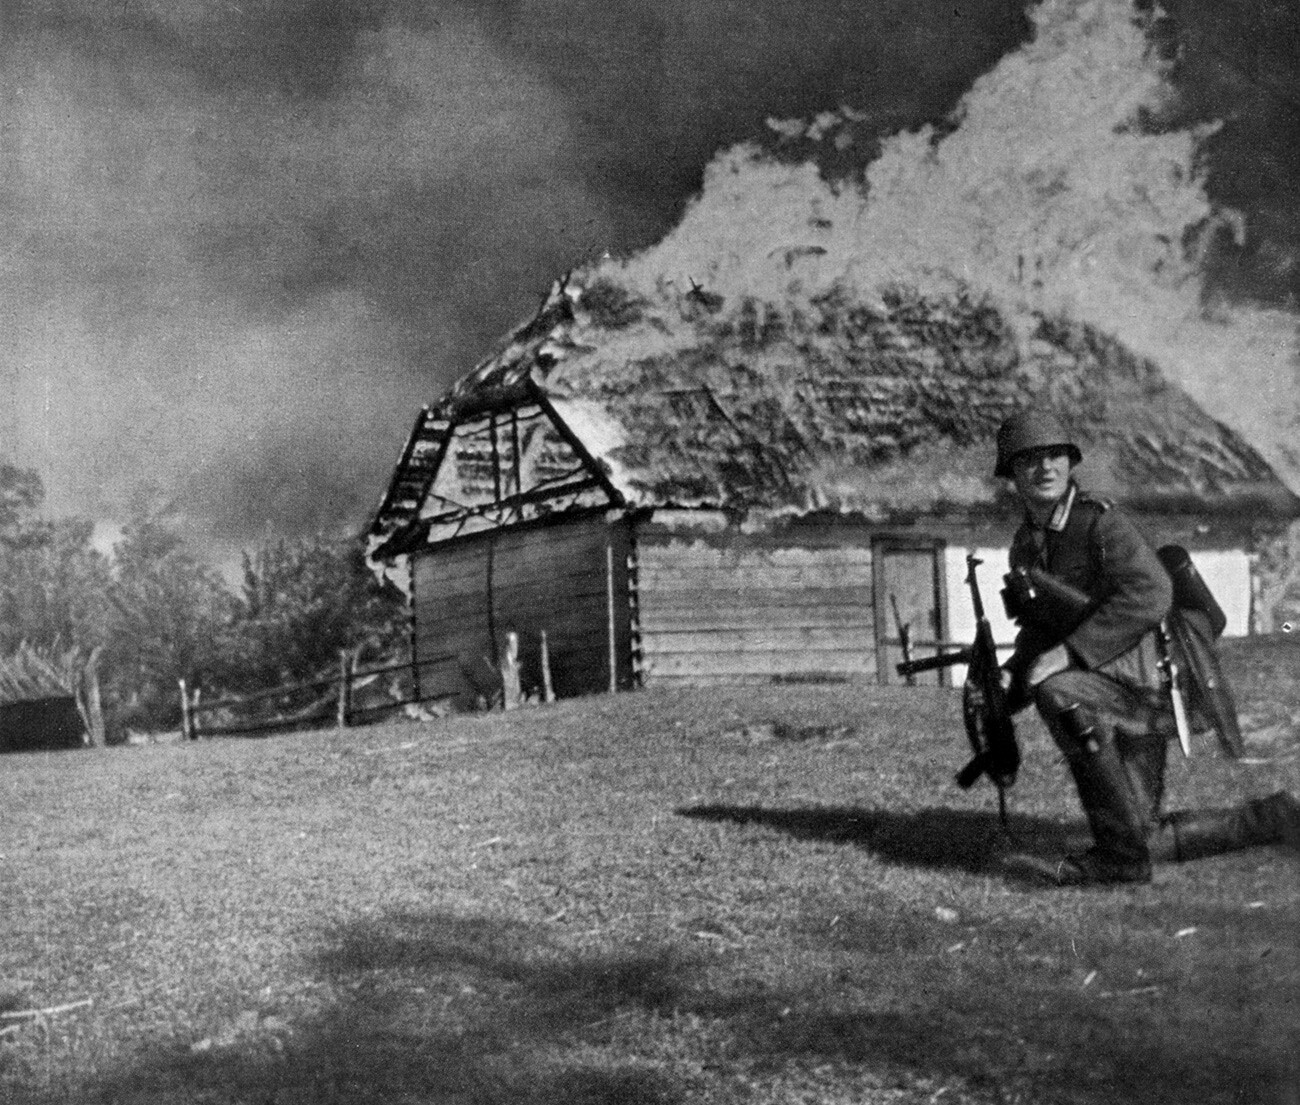 Soldats allemands combattant en Union soviétique dans le cadre de l'opération Barbarossa, 1941